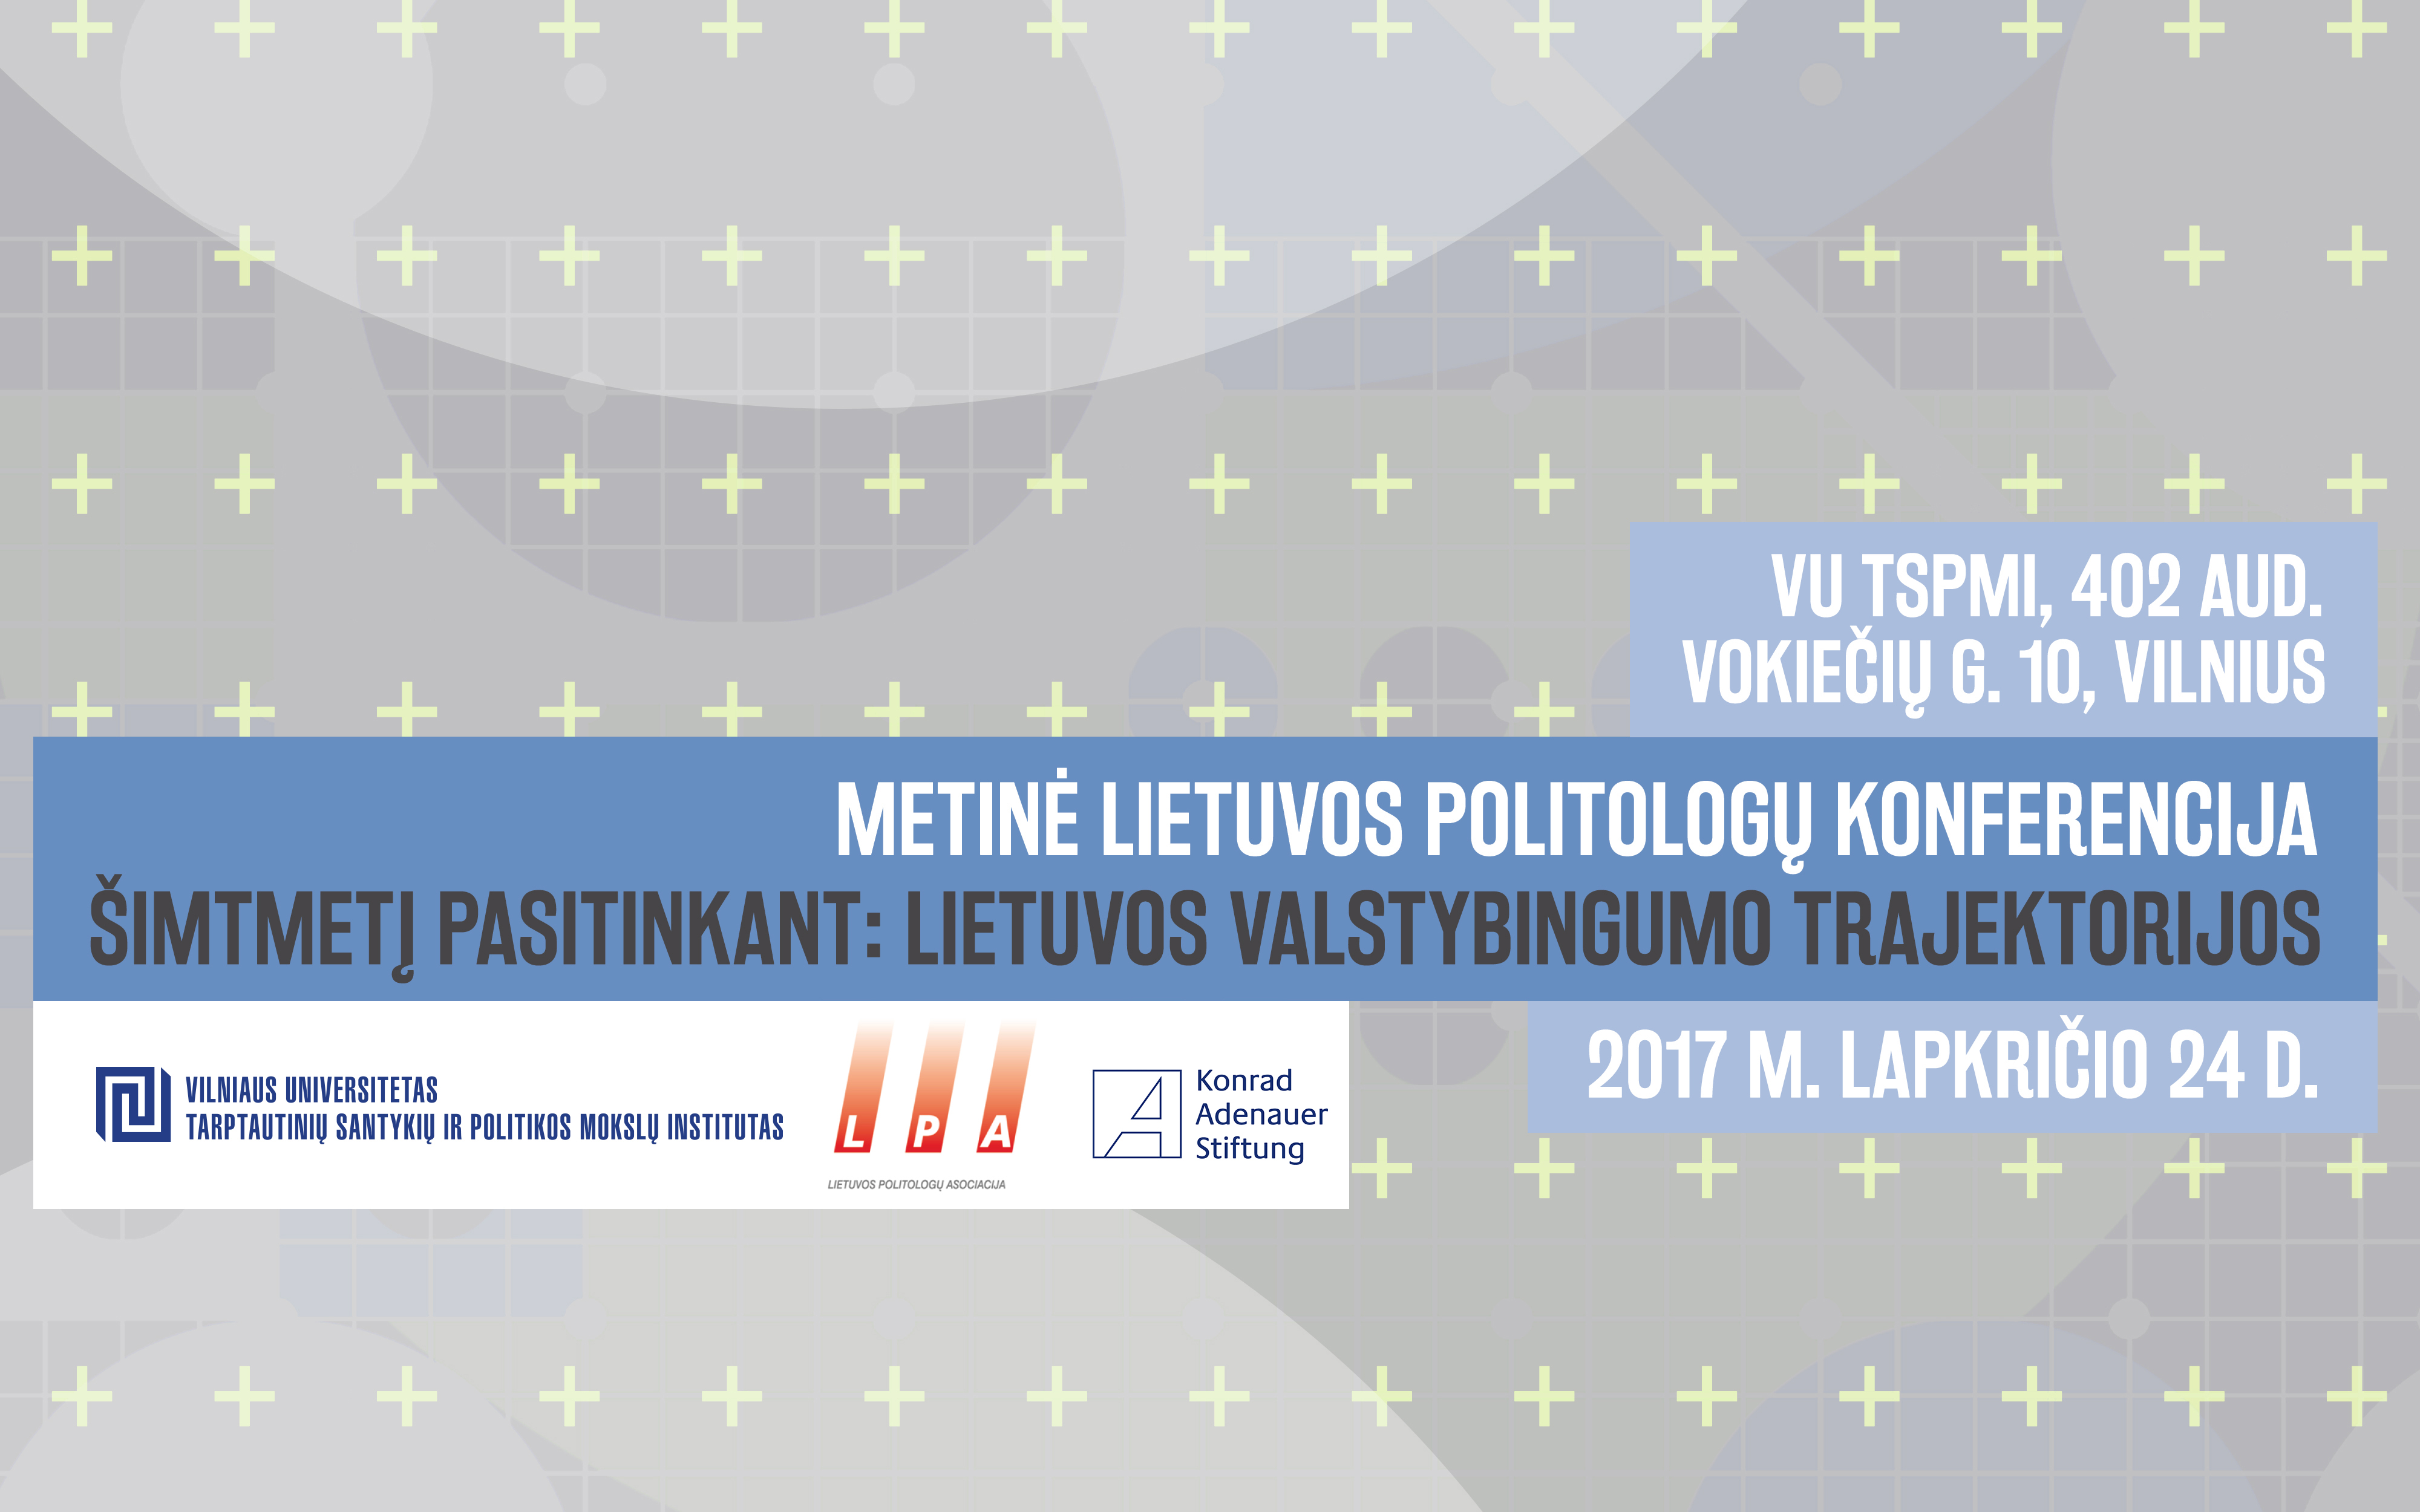 Metinė Lietuvos politologų konferencija 2017